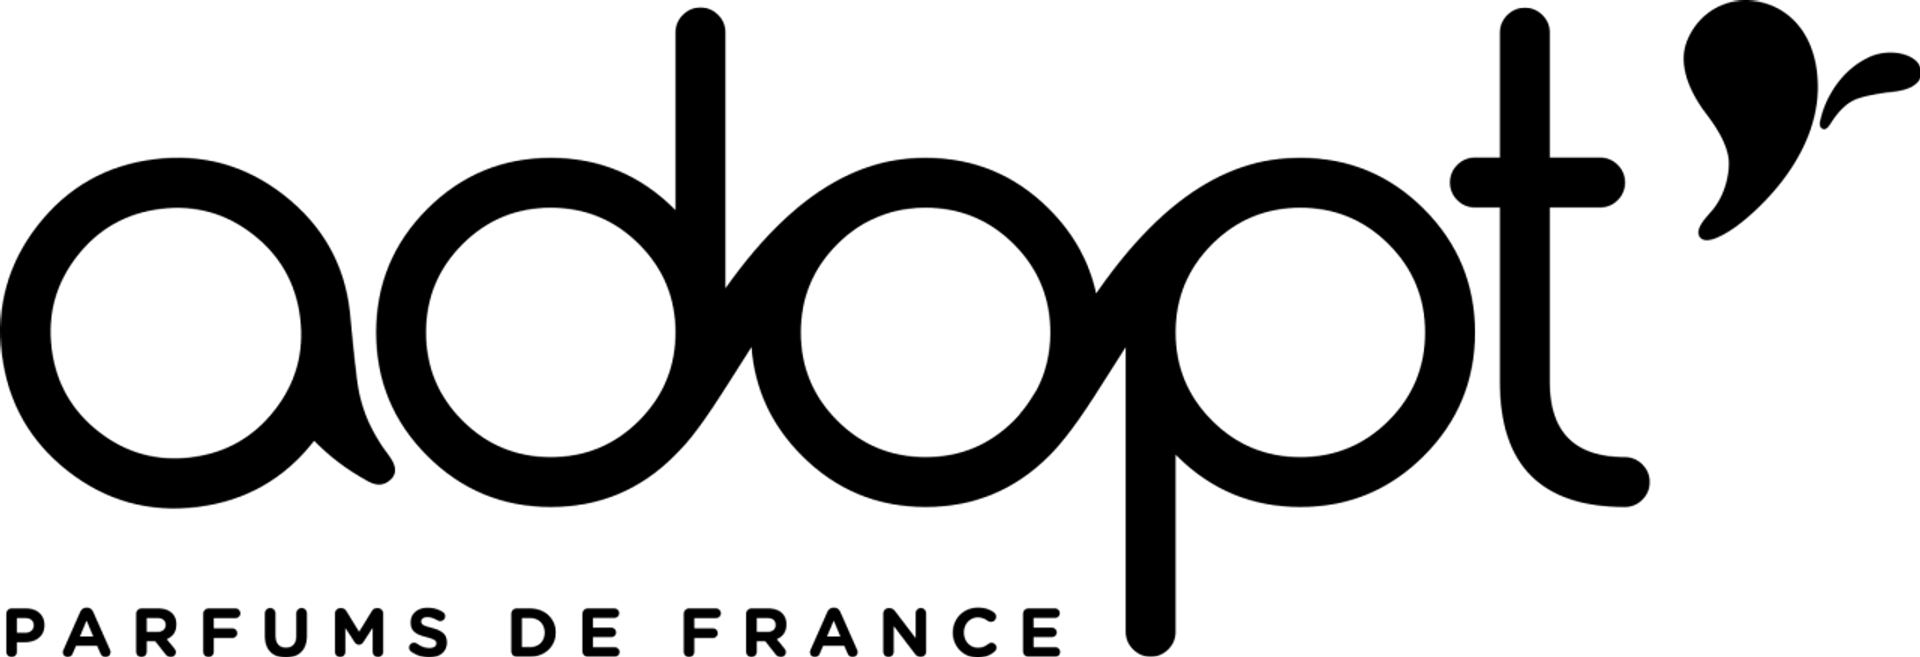 ADOPT' logo